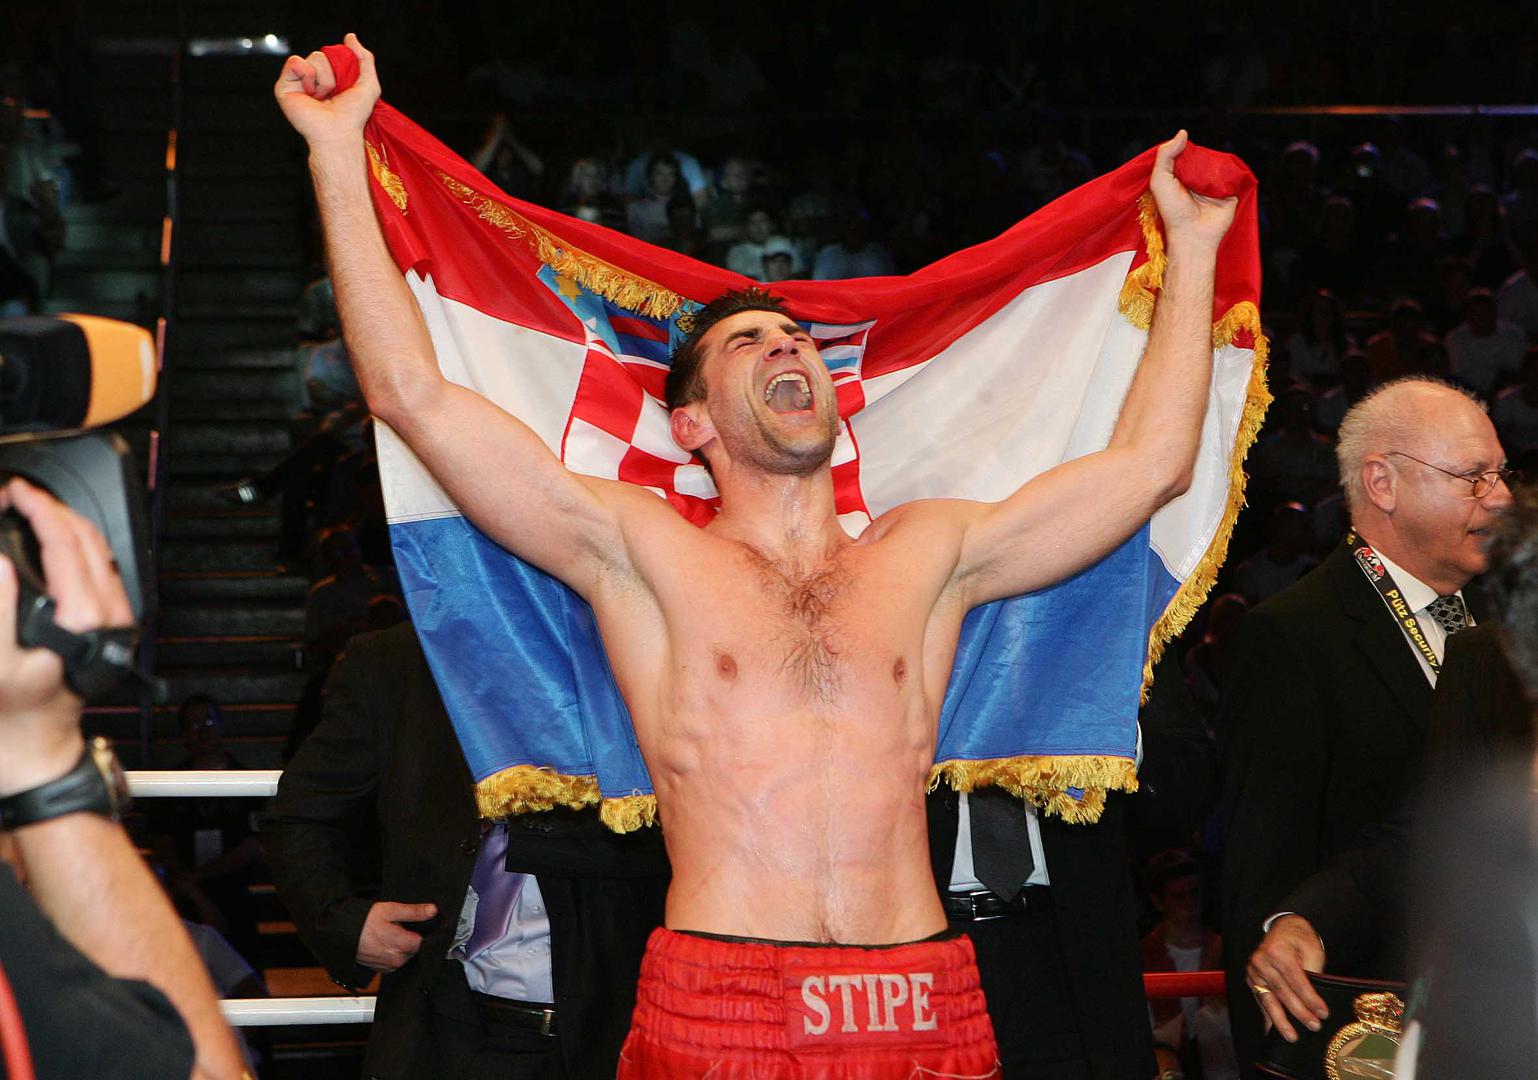 Hrvatski boksač Stipe Drviš na današnji je dan prije 17 godina postao svjetski prvak u poluteškoj kategoriji po verziji WBA